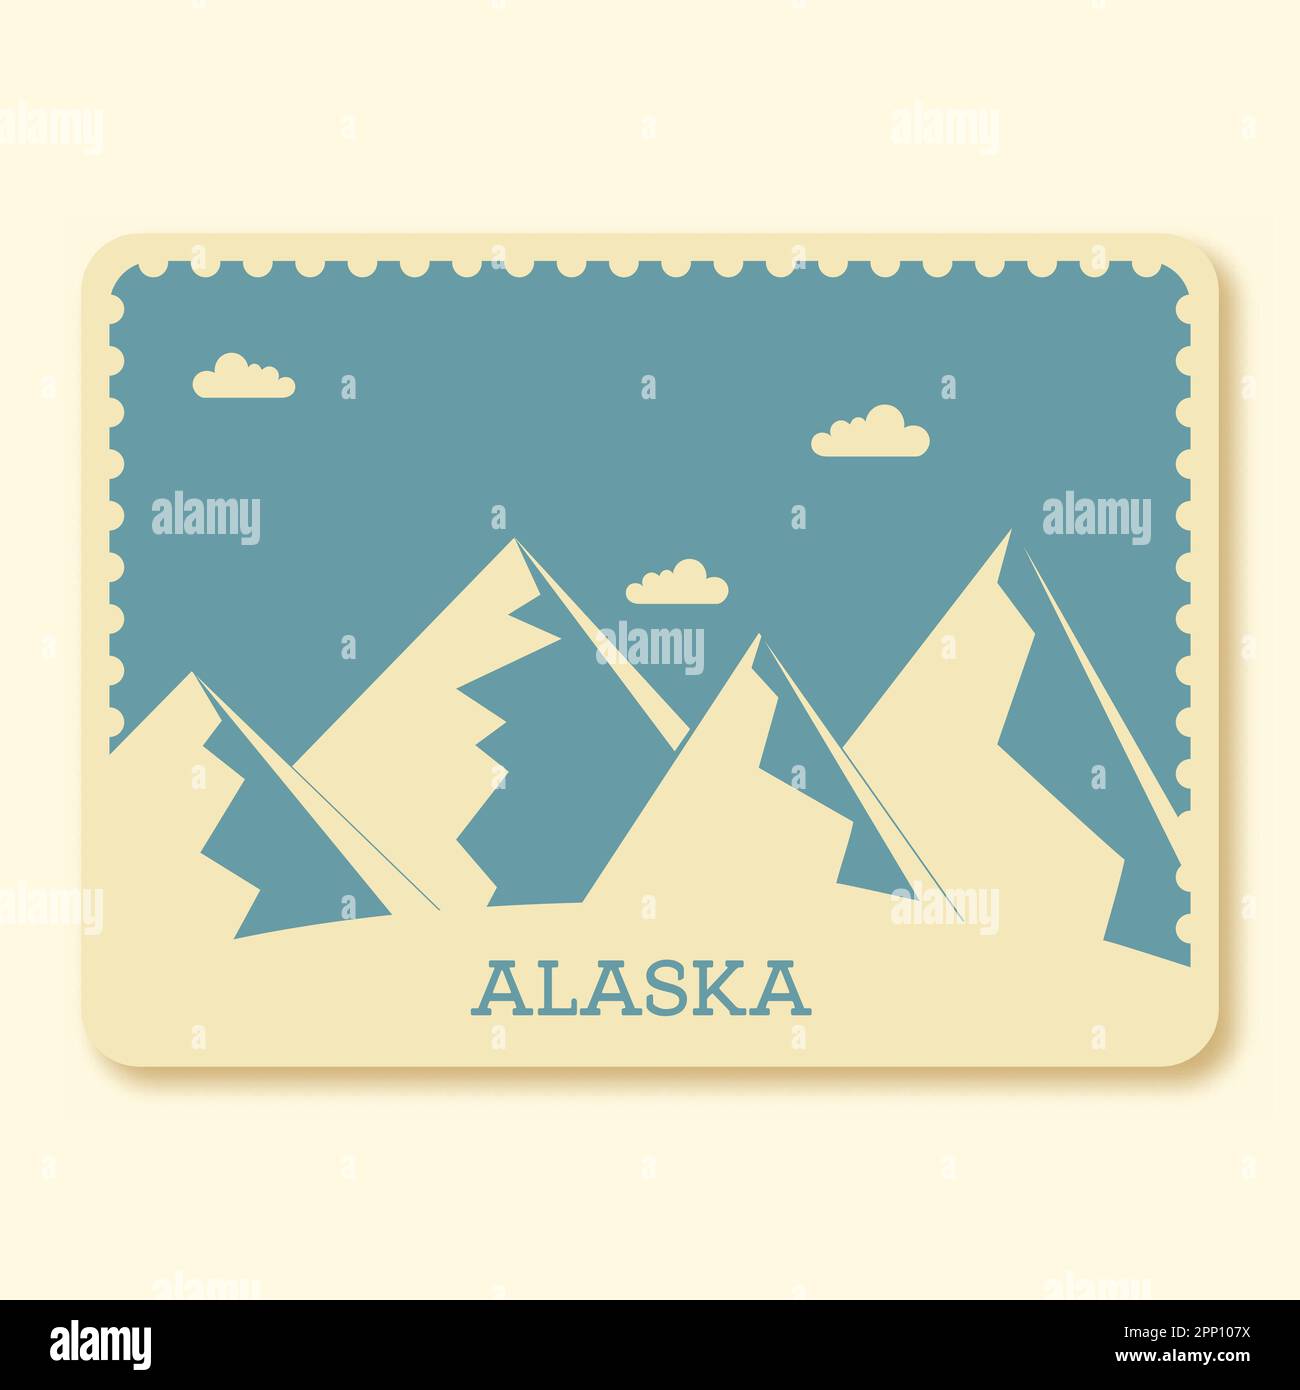 Alaska Park Stamp Or Poster Design In Beige And Blue Color. Stock Vector